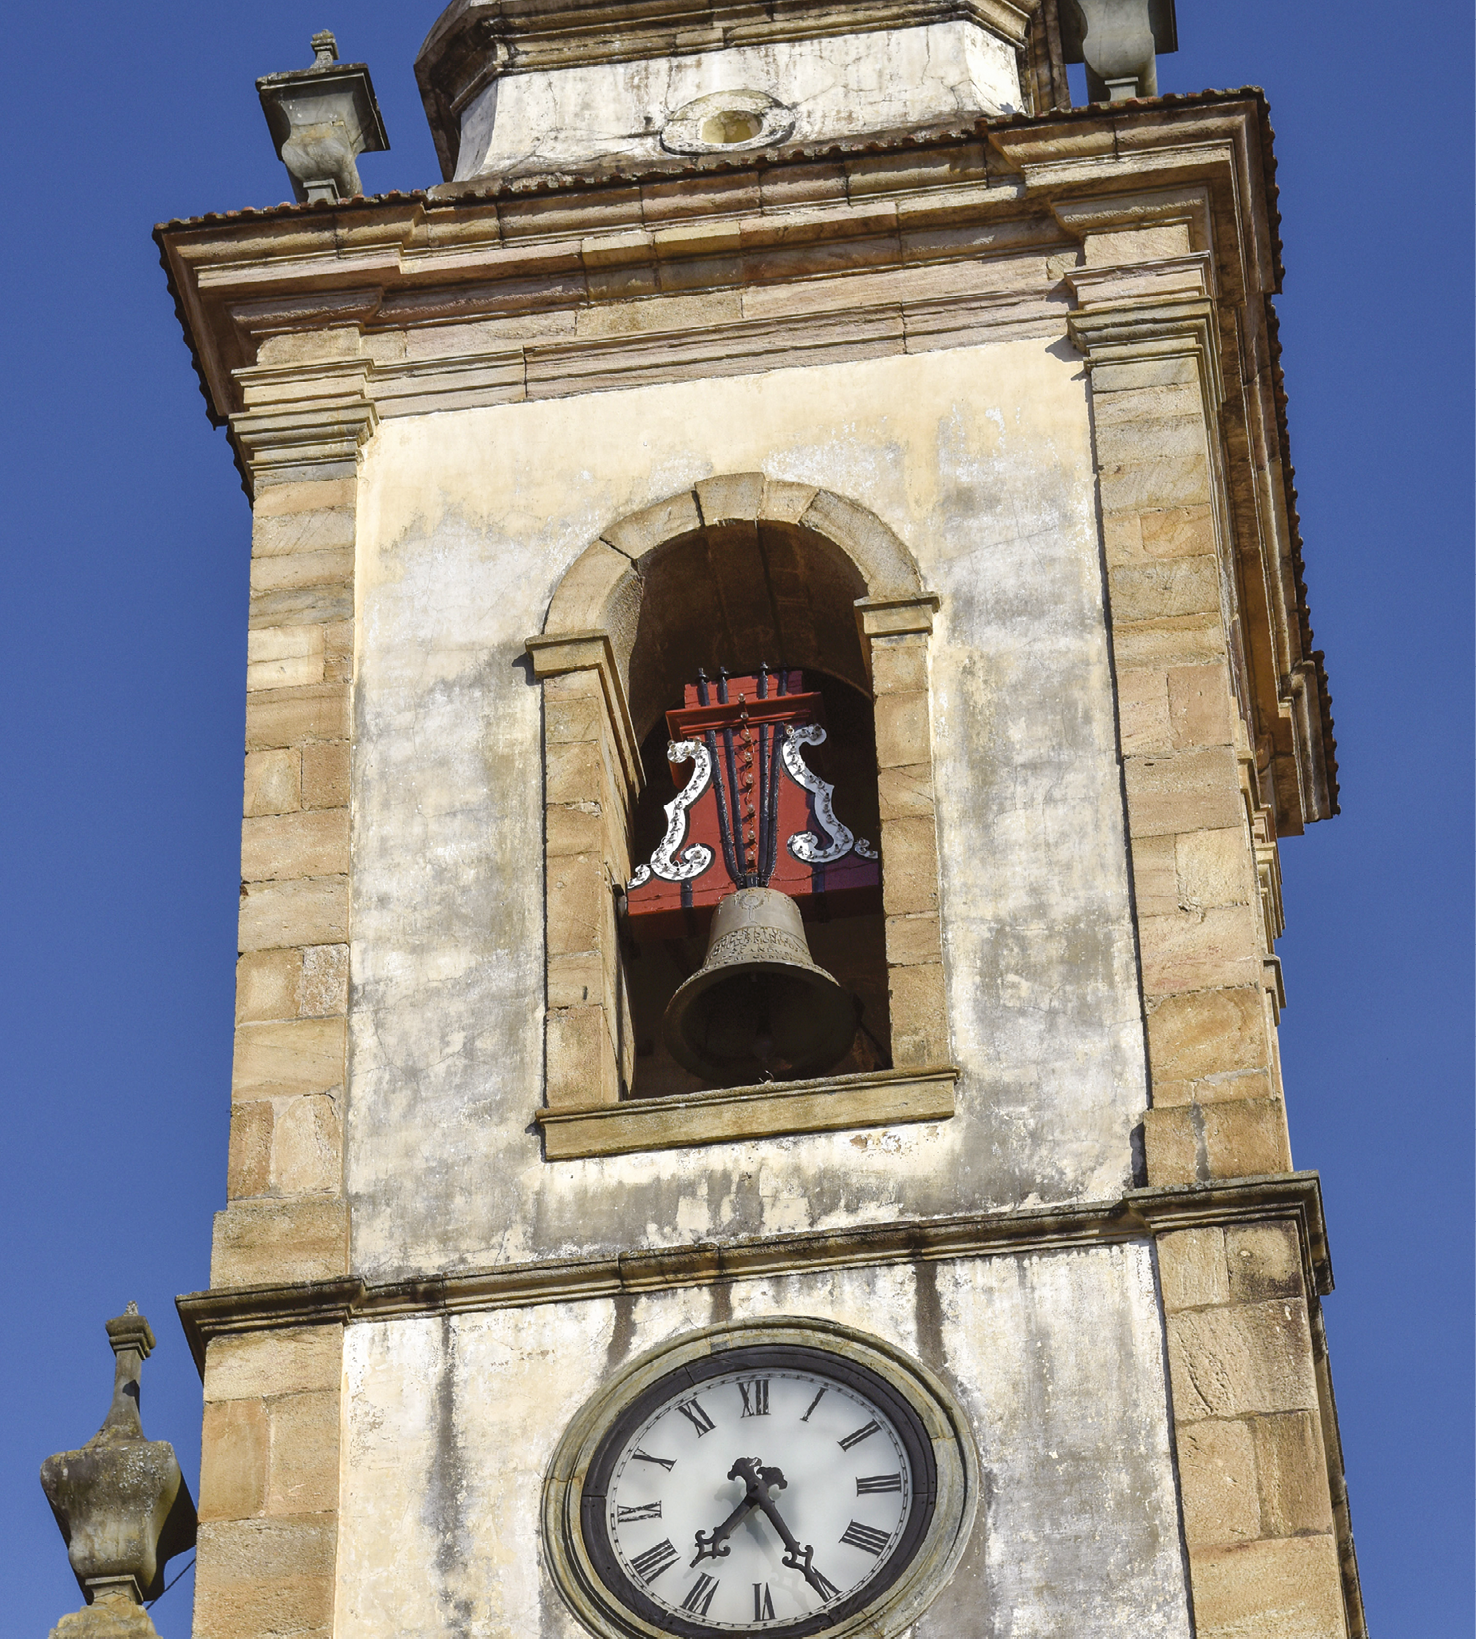 Fotografia. Destacando uma torre com um sino. Abaixo, um relógio com números romanos.